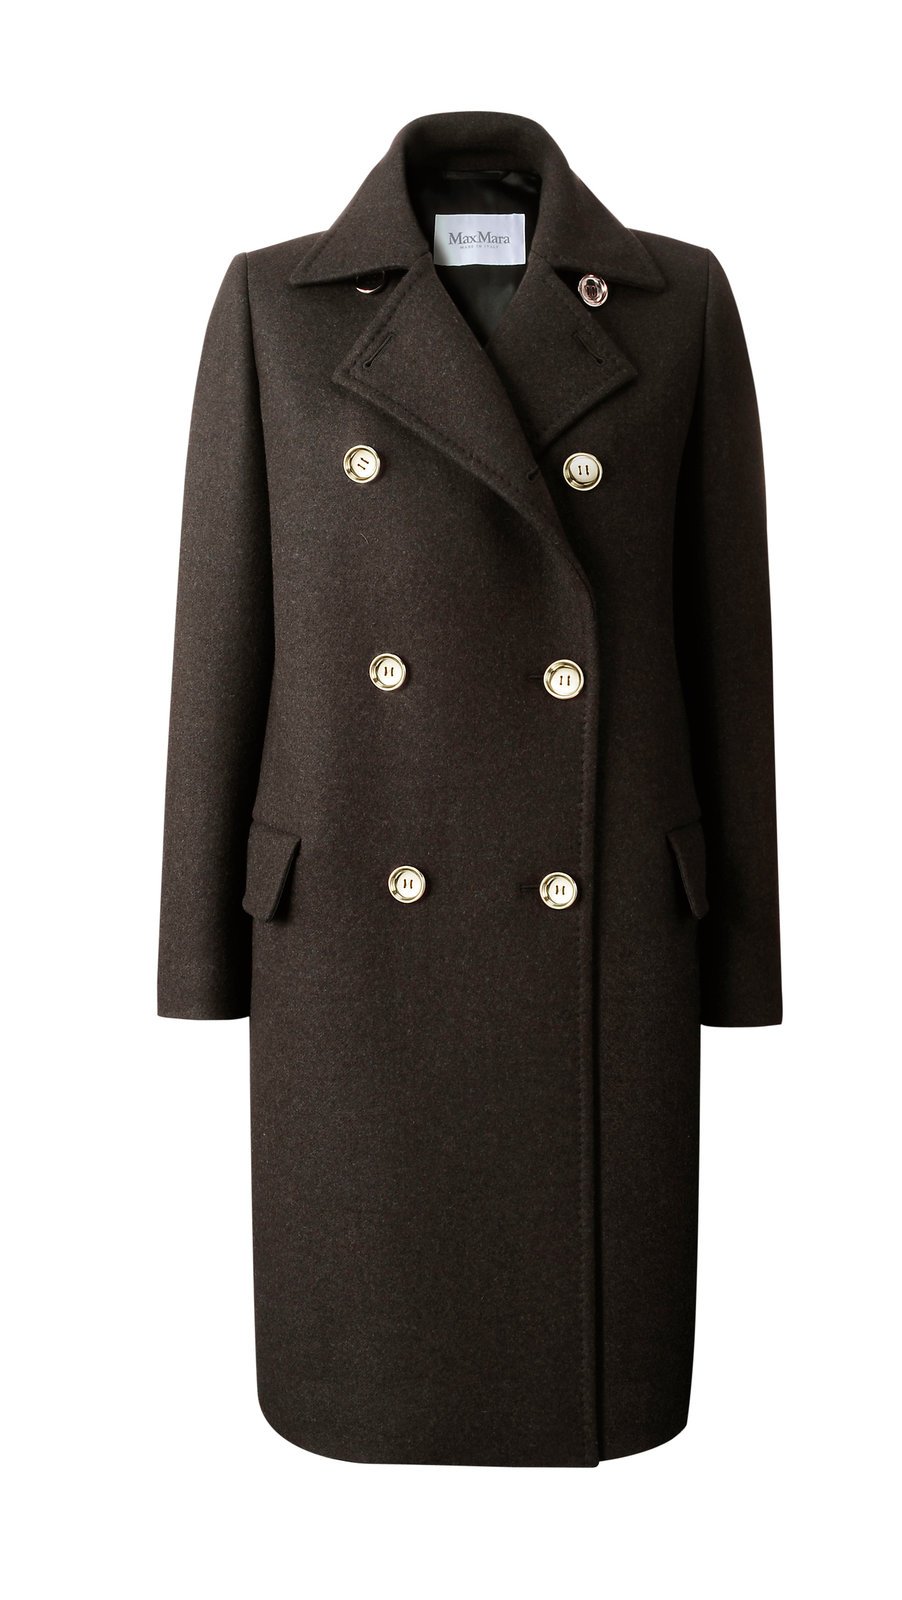 Kabát Liriche, MaxMara, 34 300 Kč.